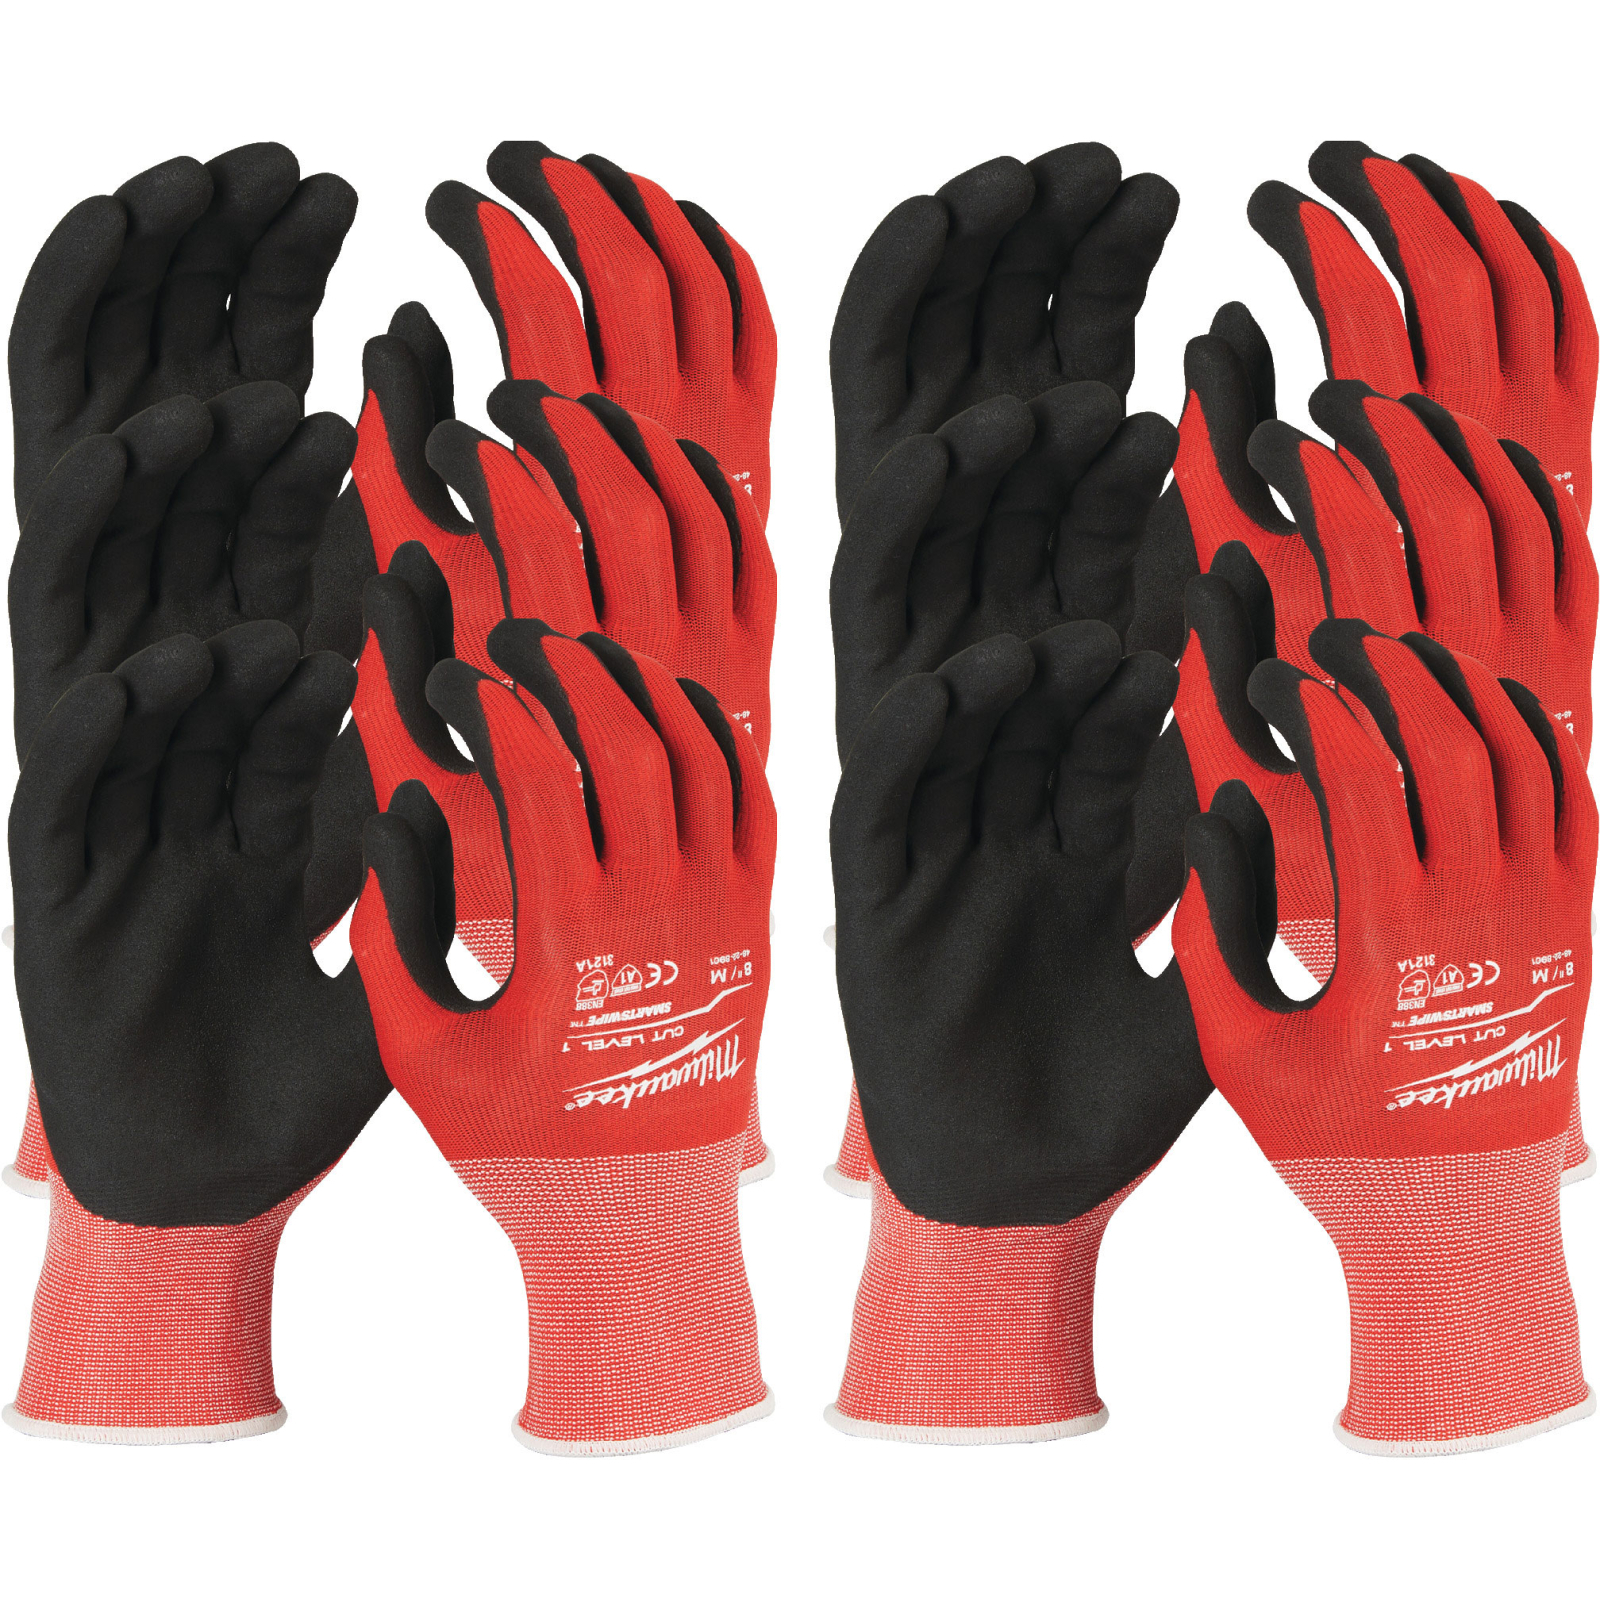 Захисні рукавиці Milwaukee з опором порізам 1 рівня, 9/L, 12пар (4932471615)